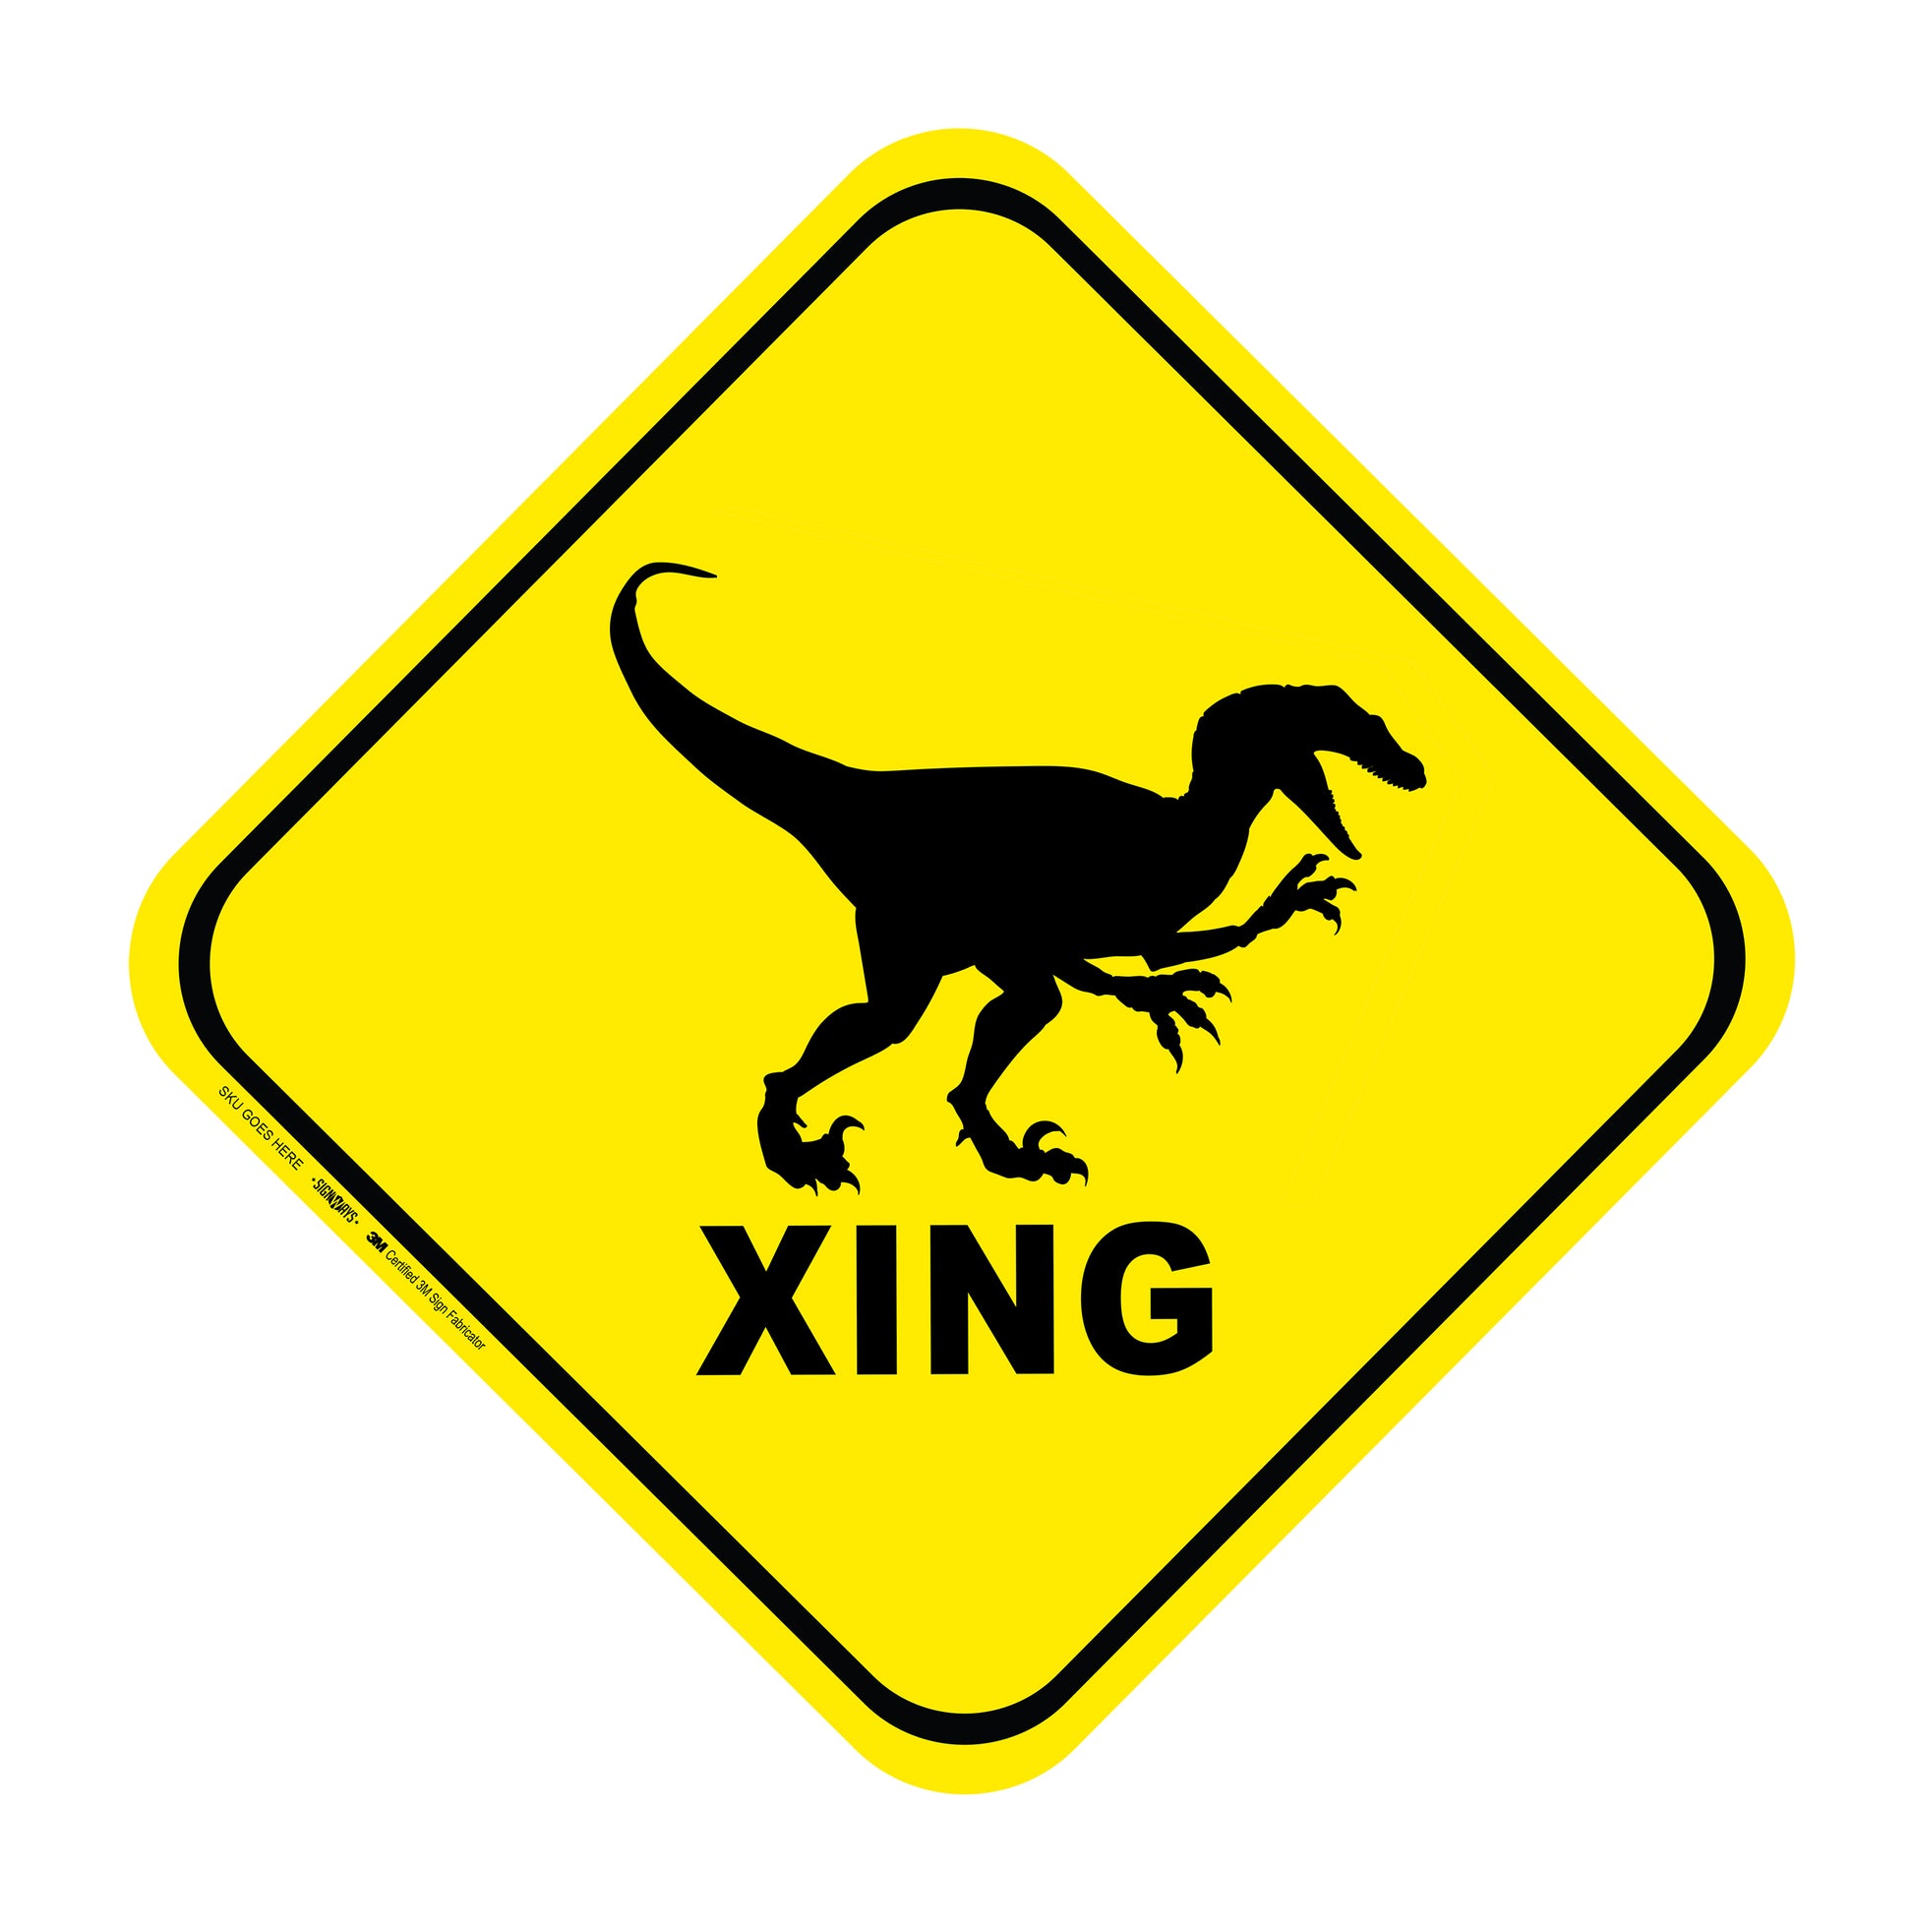 Velociraptor Crossing dinosaur sign